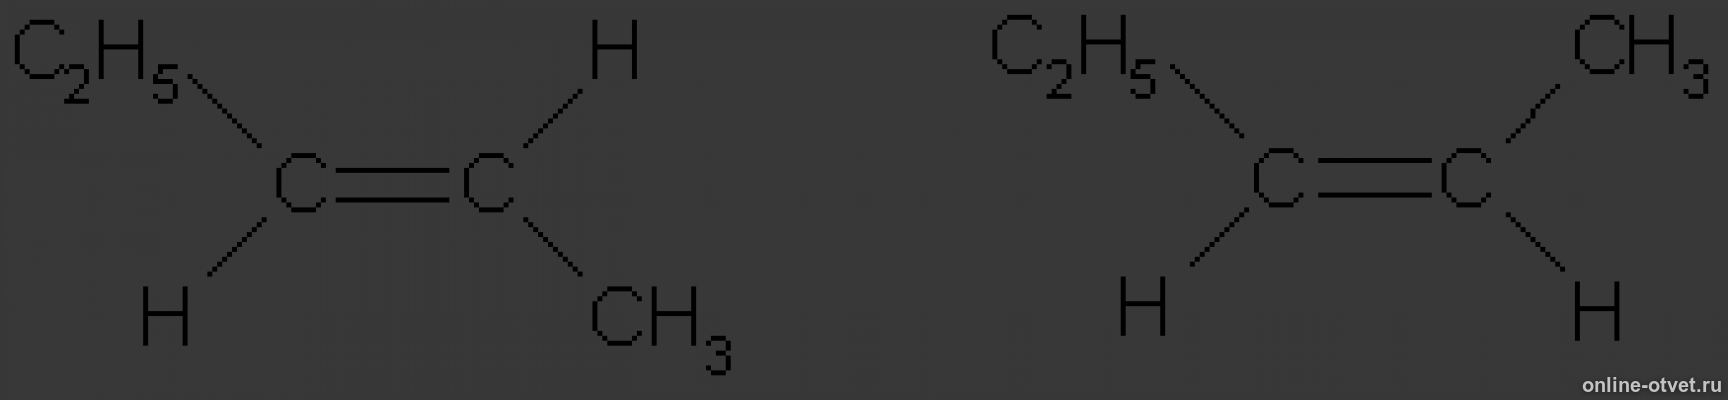 Цис гексен 4. Цис пентен 2. Цис пентен 2 формула. Транс пентен 2 структурная формула. 3 3 Диметил бутен 1 цис и транс изомерия.